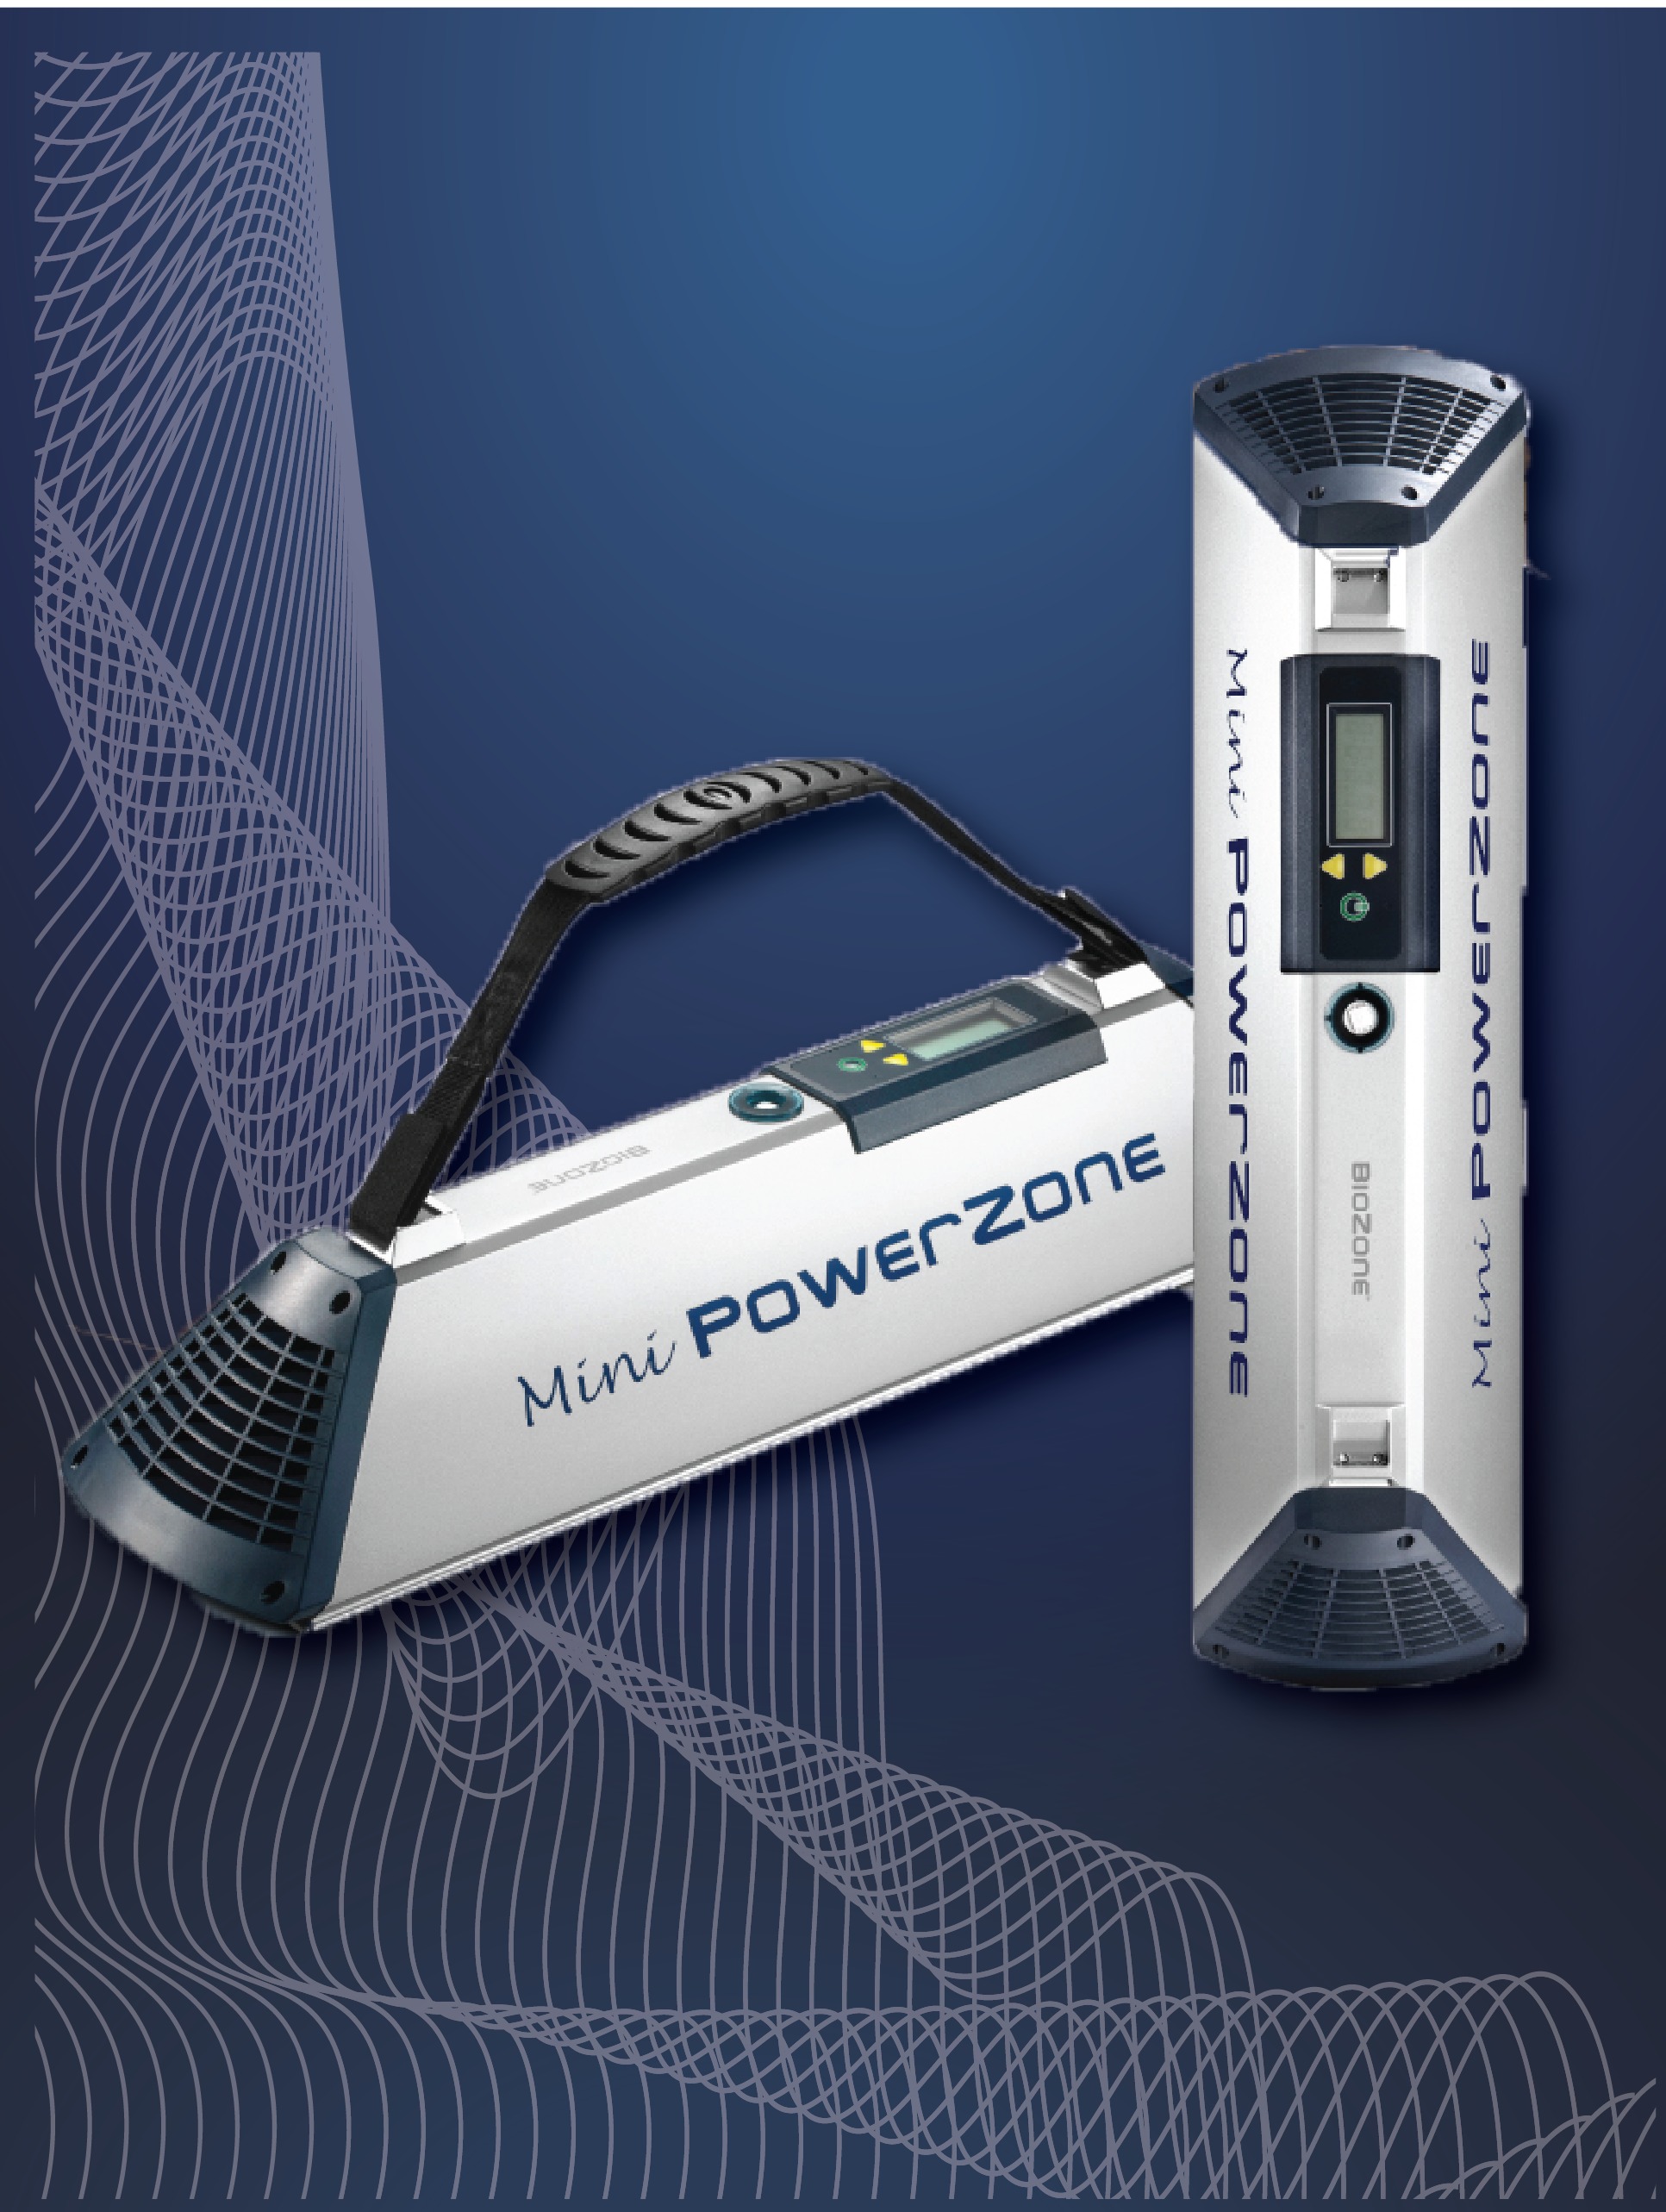 MiniPowerZone